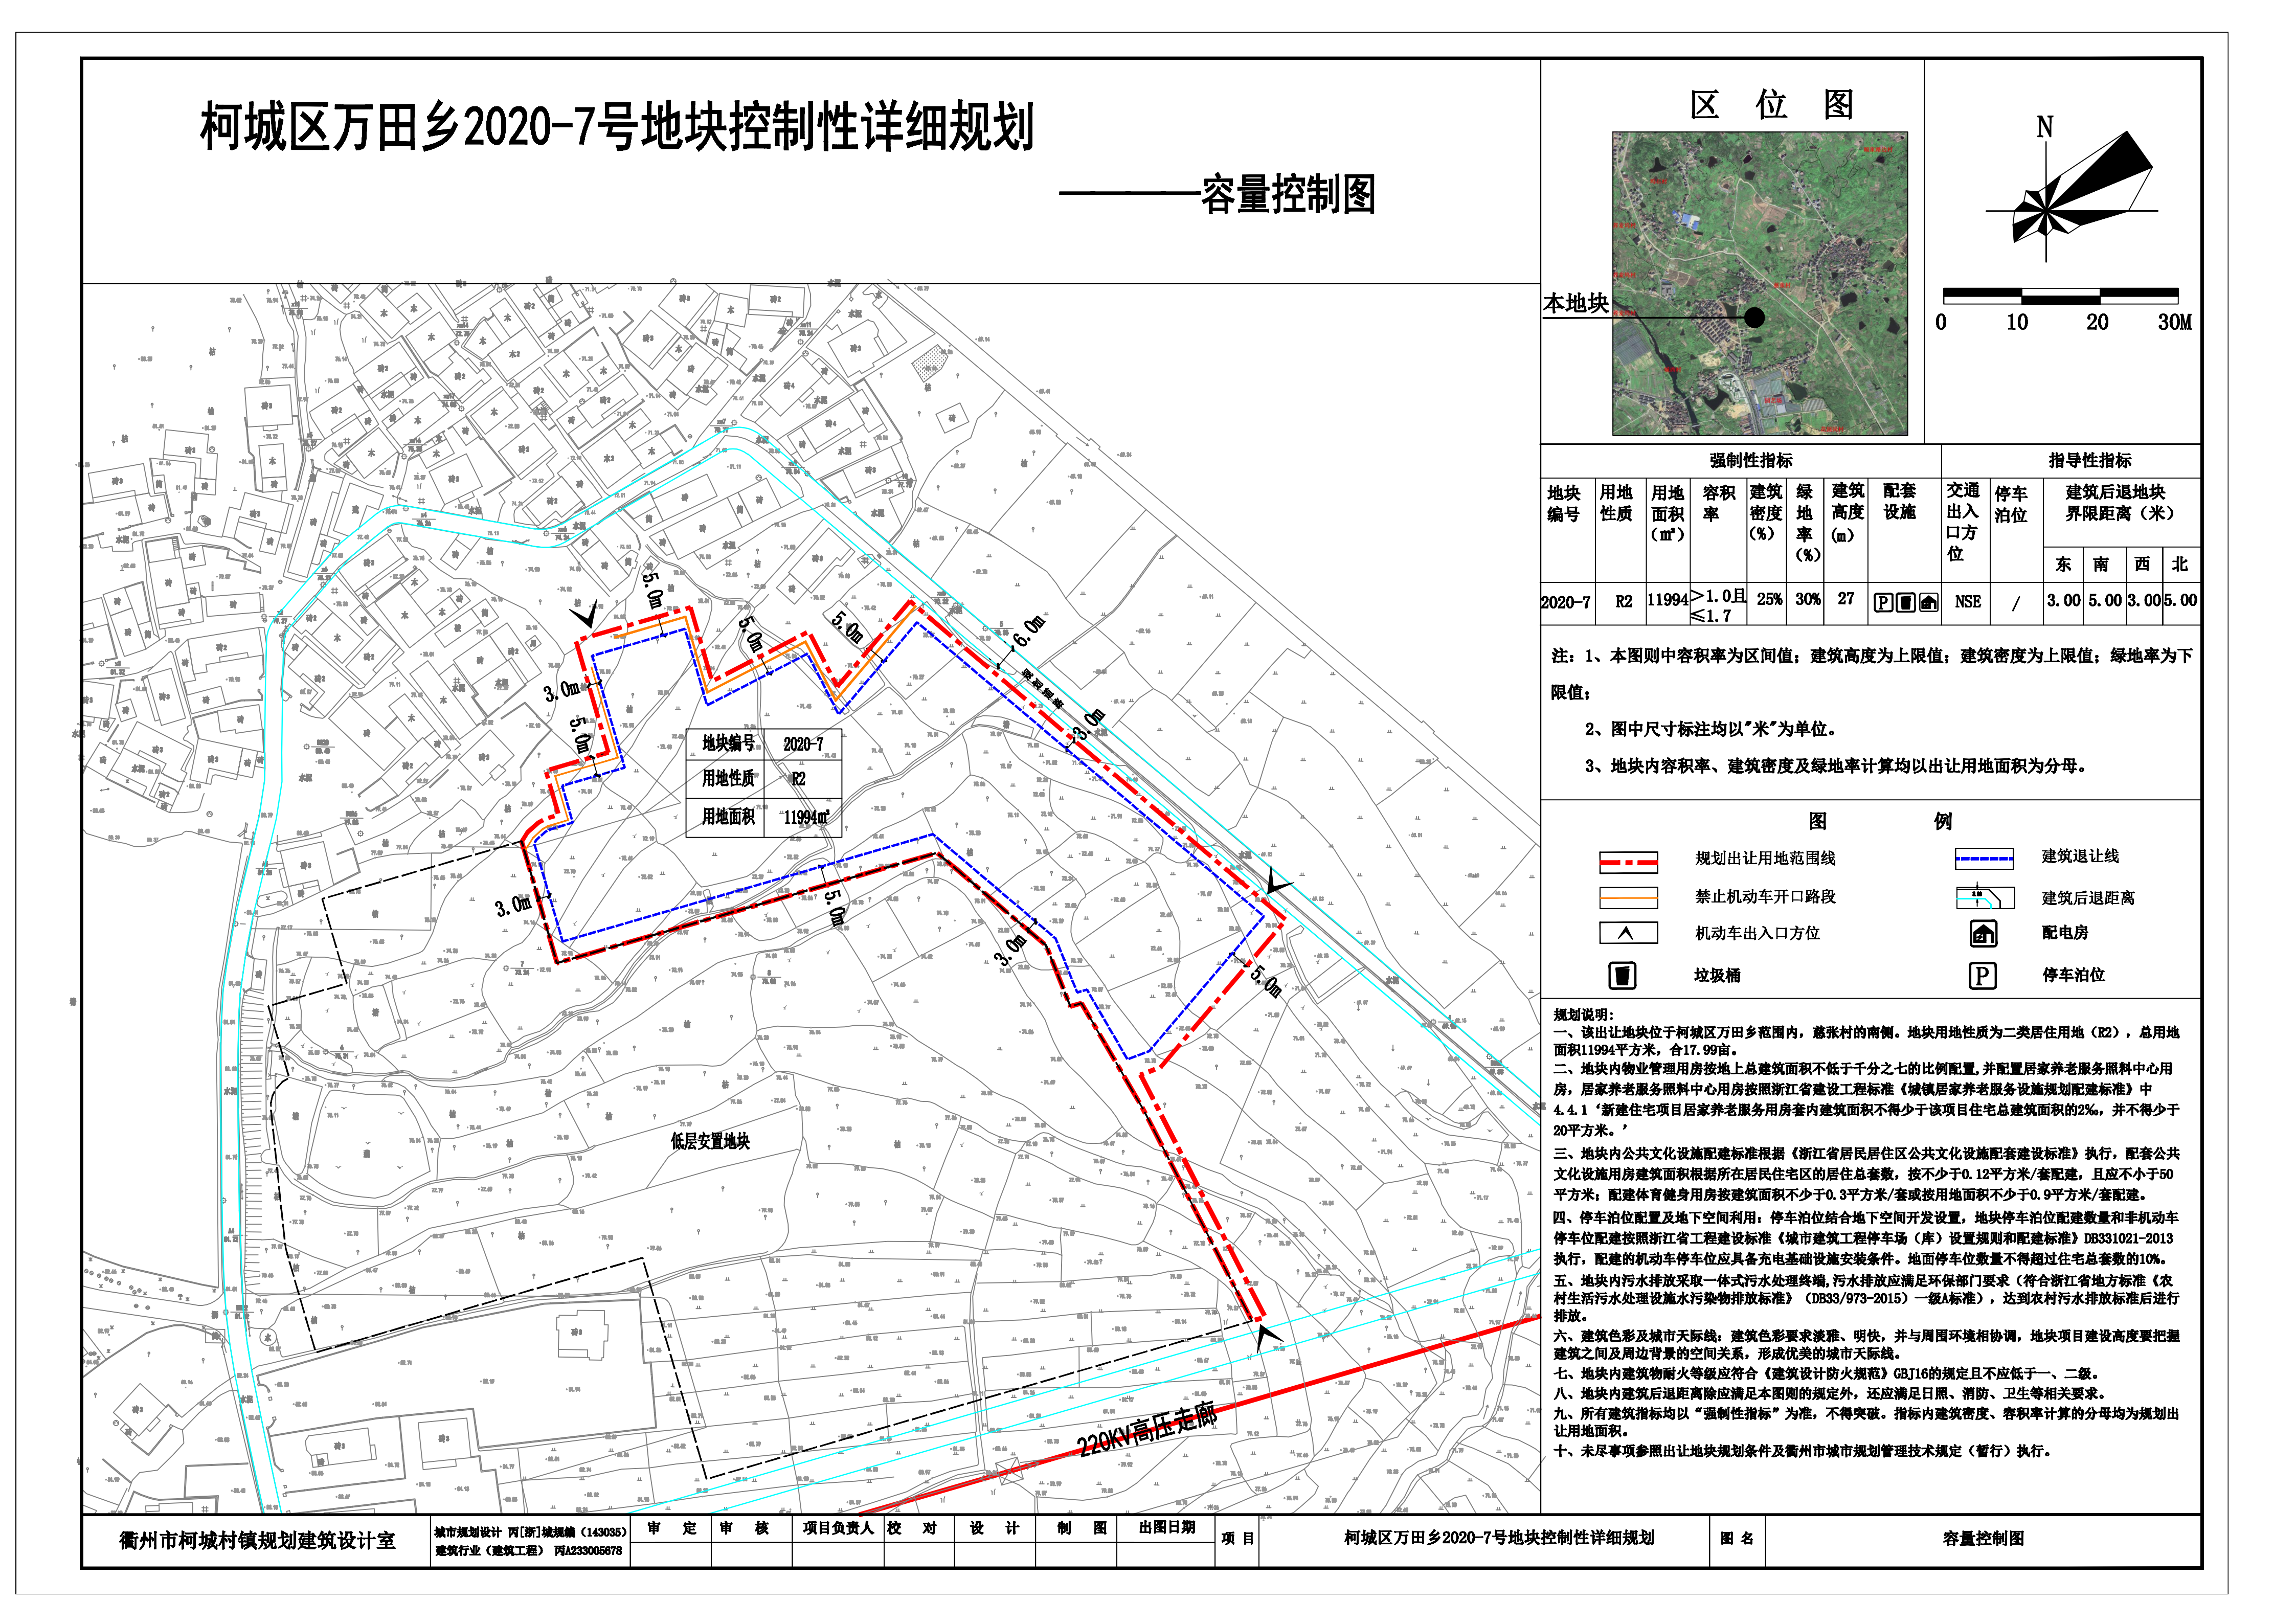 柯城区万田乡2020-7号地块规划公示,为居住用地